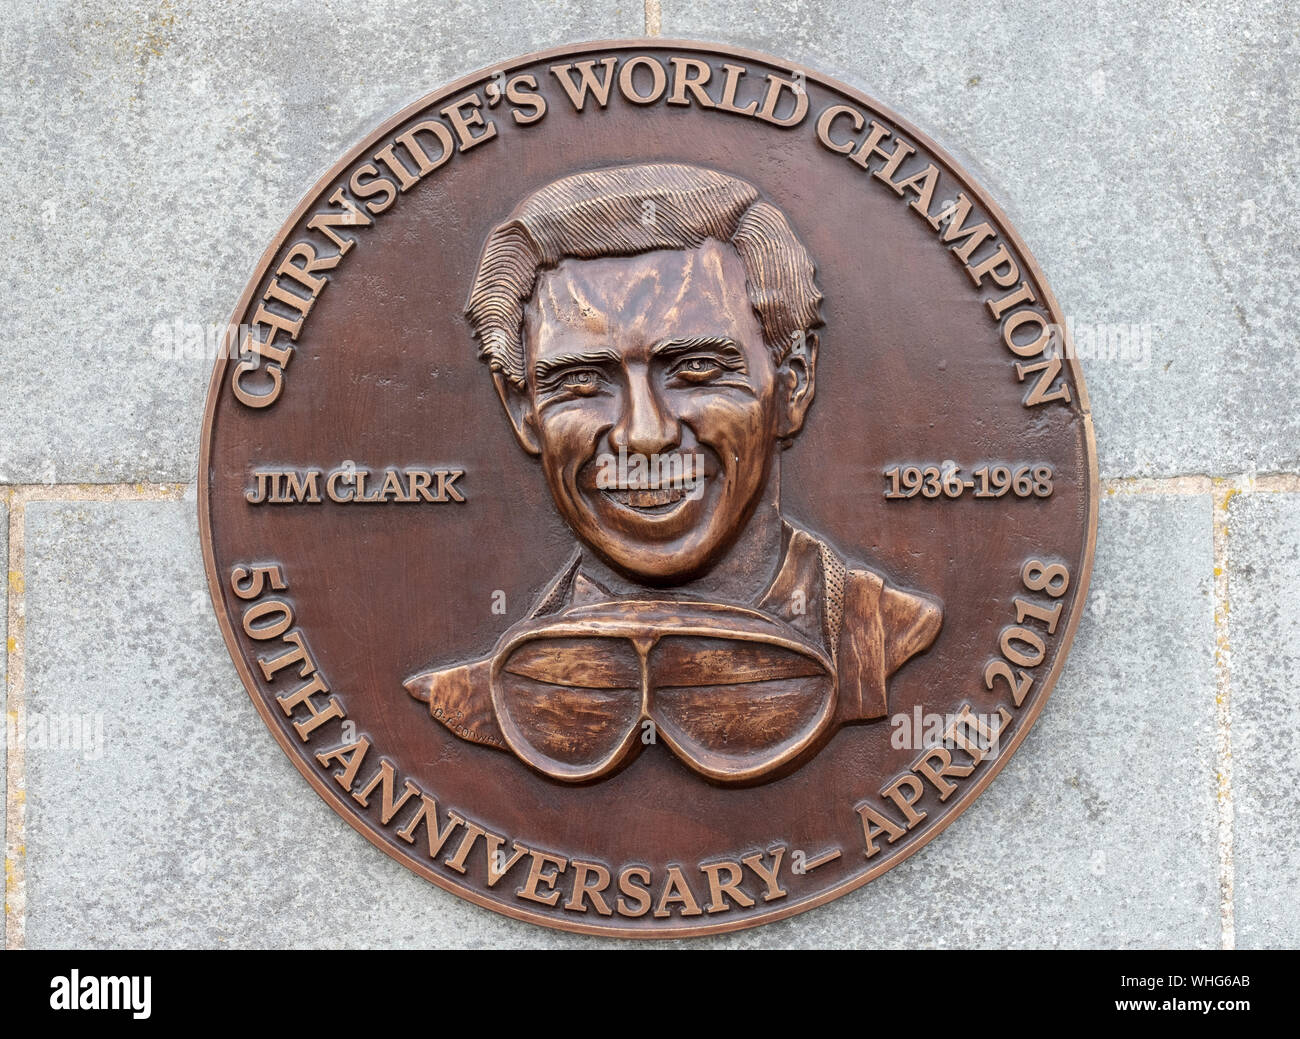 Bronzetafel zur Erinnerung an die Formel 1 Rennsport Weltmeister Jim Clark in den Berwickshire Dorf Chirnside. Stockfoto